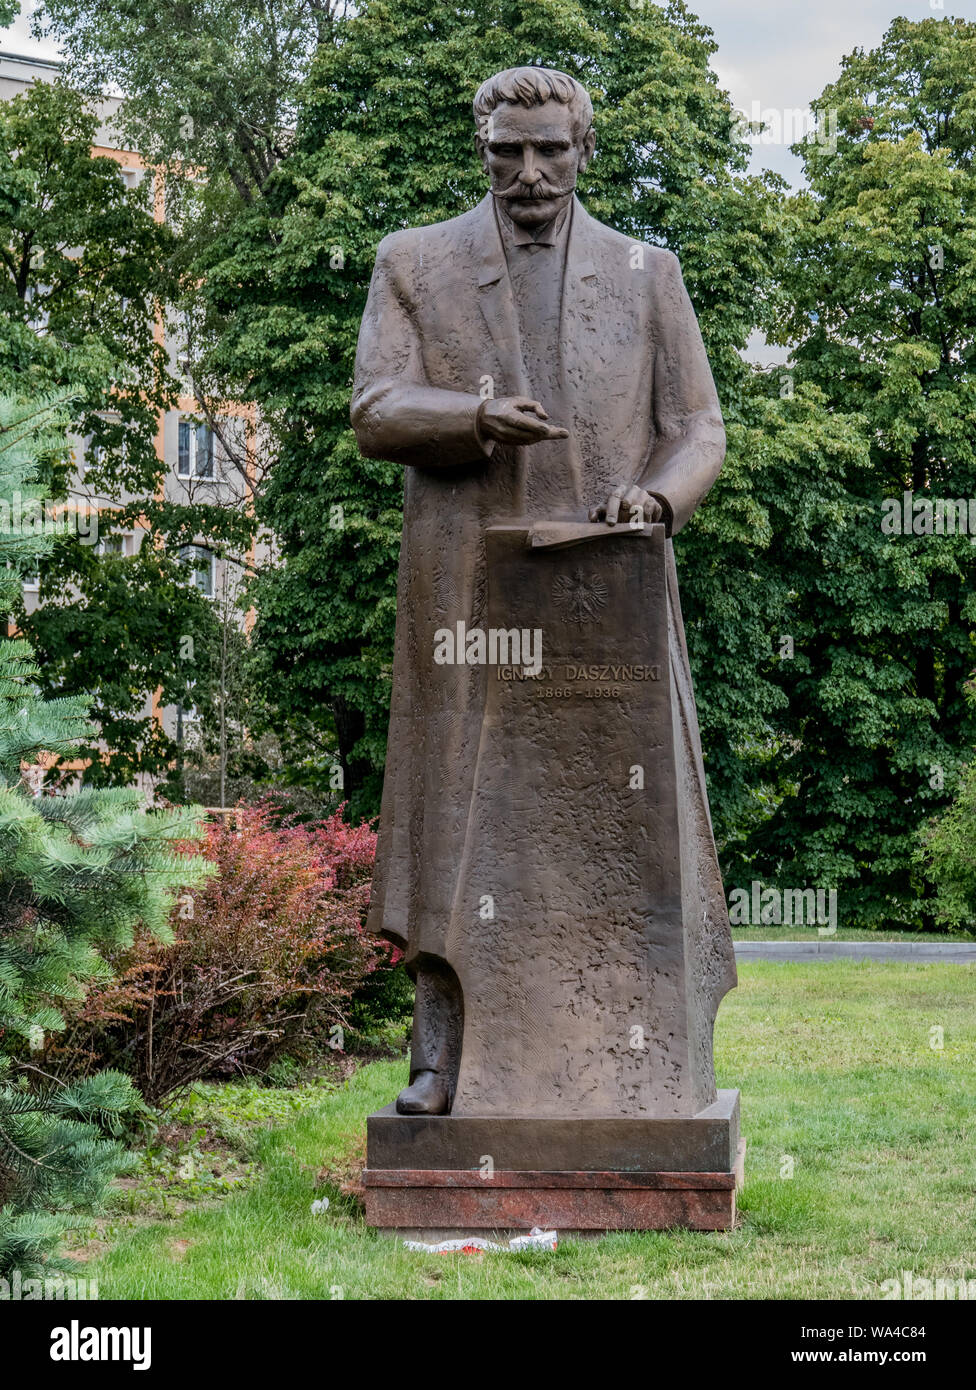 Ignacy Daszyński statue, Plac na Rozdrożu, Warsaw, Poland Stock Photo